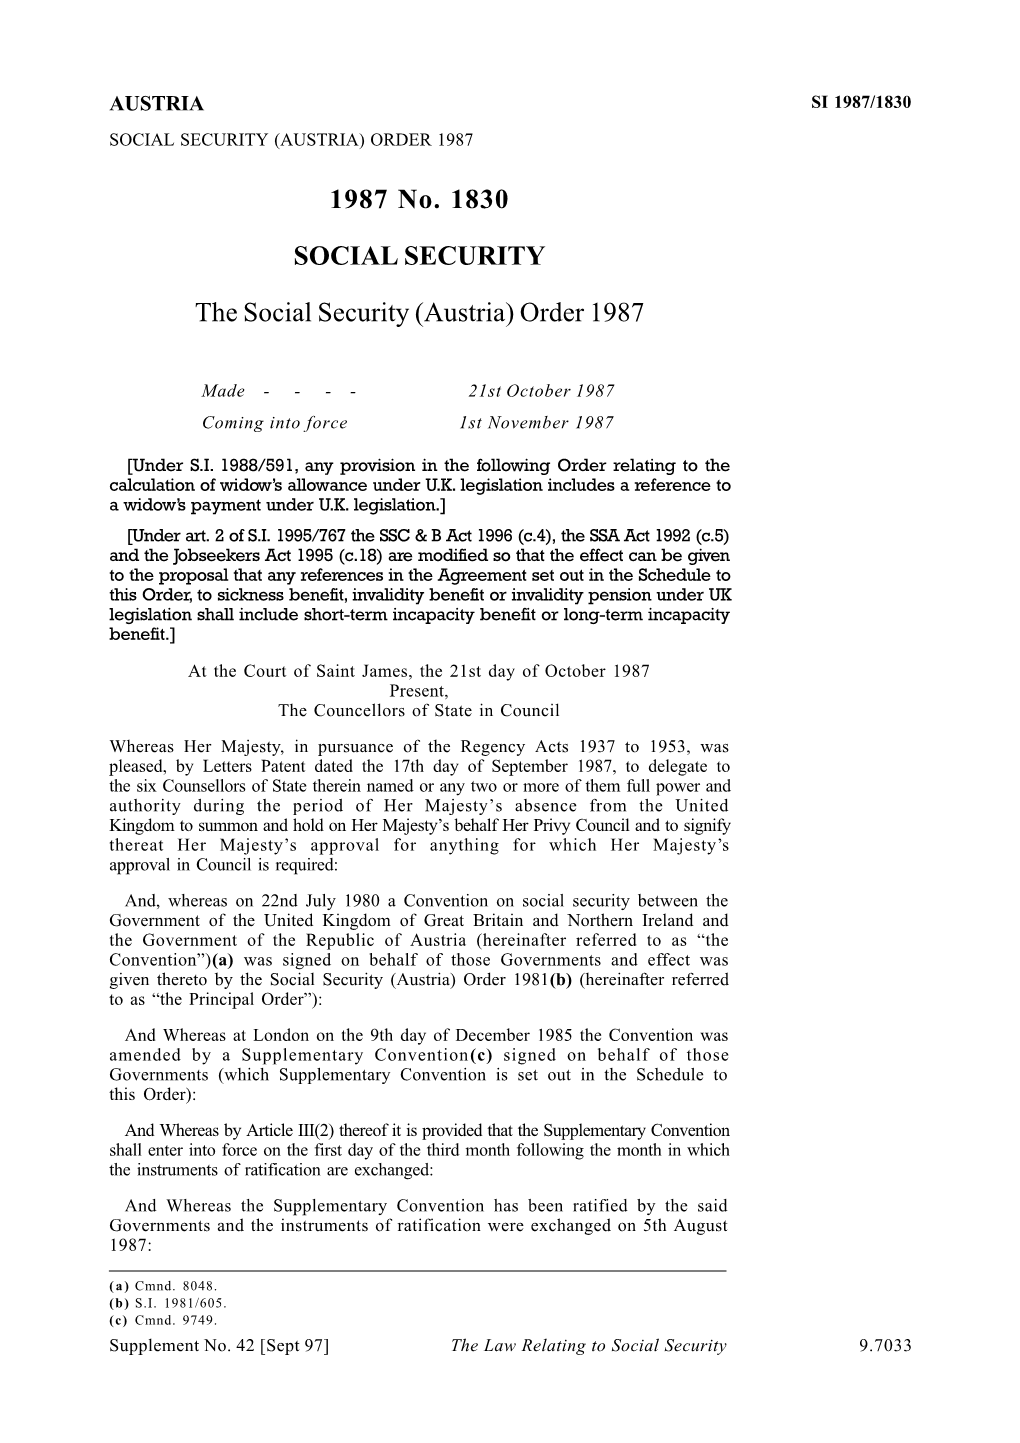 1987 No. 1830 SOCIAL SECURITY the Social